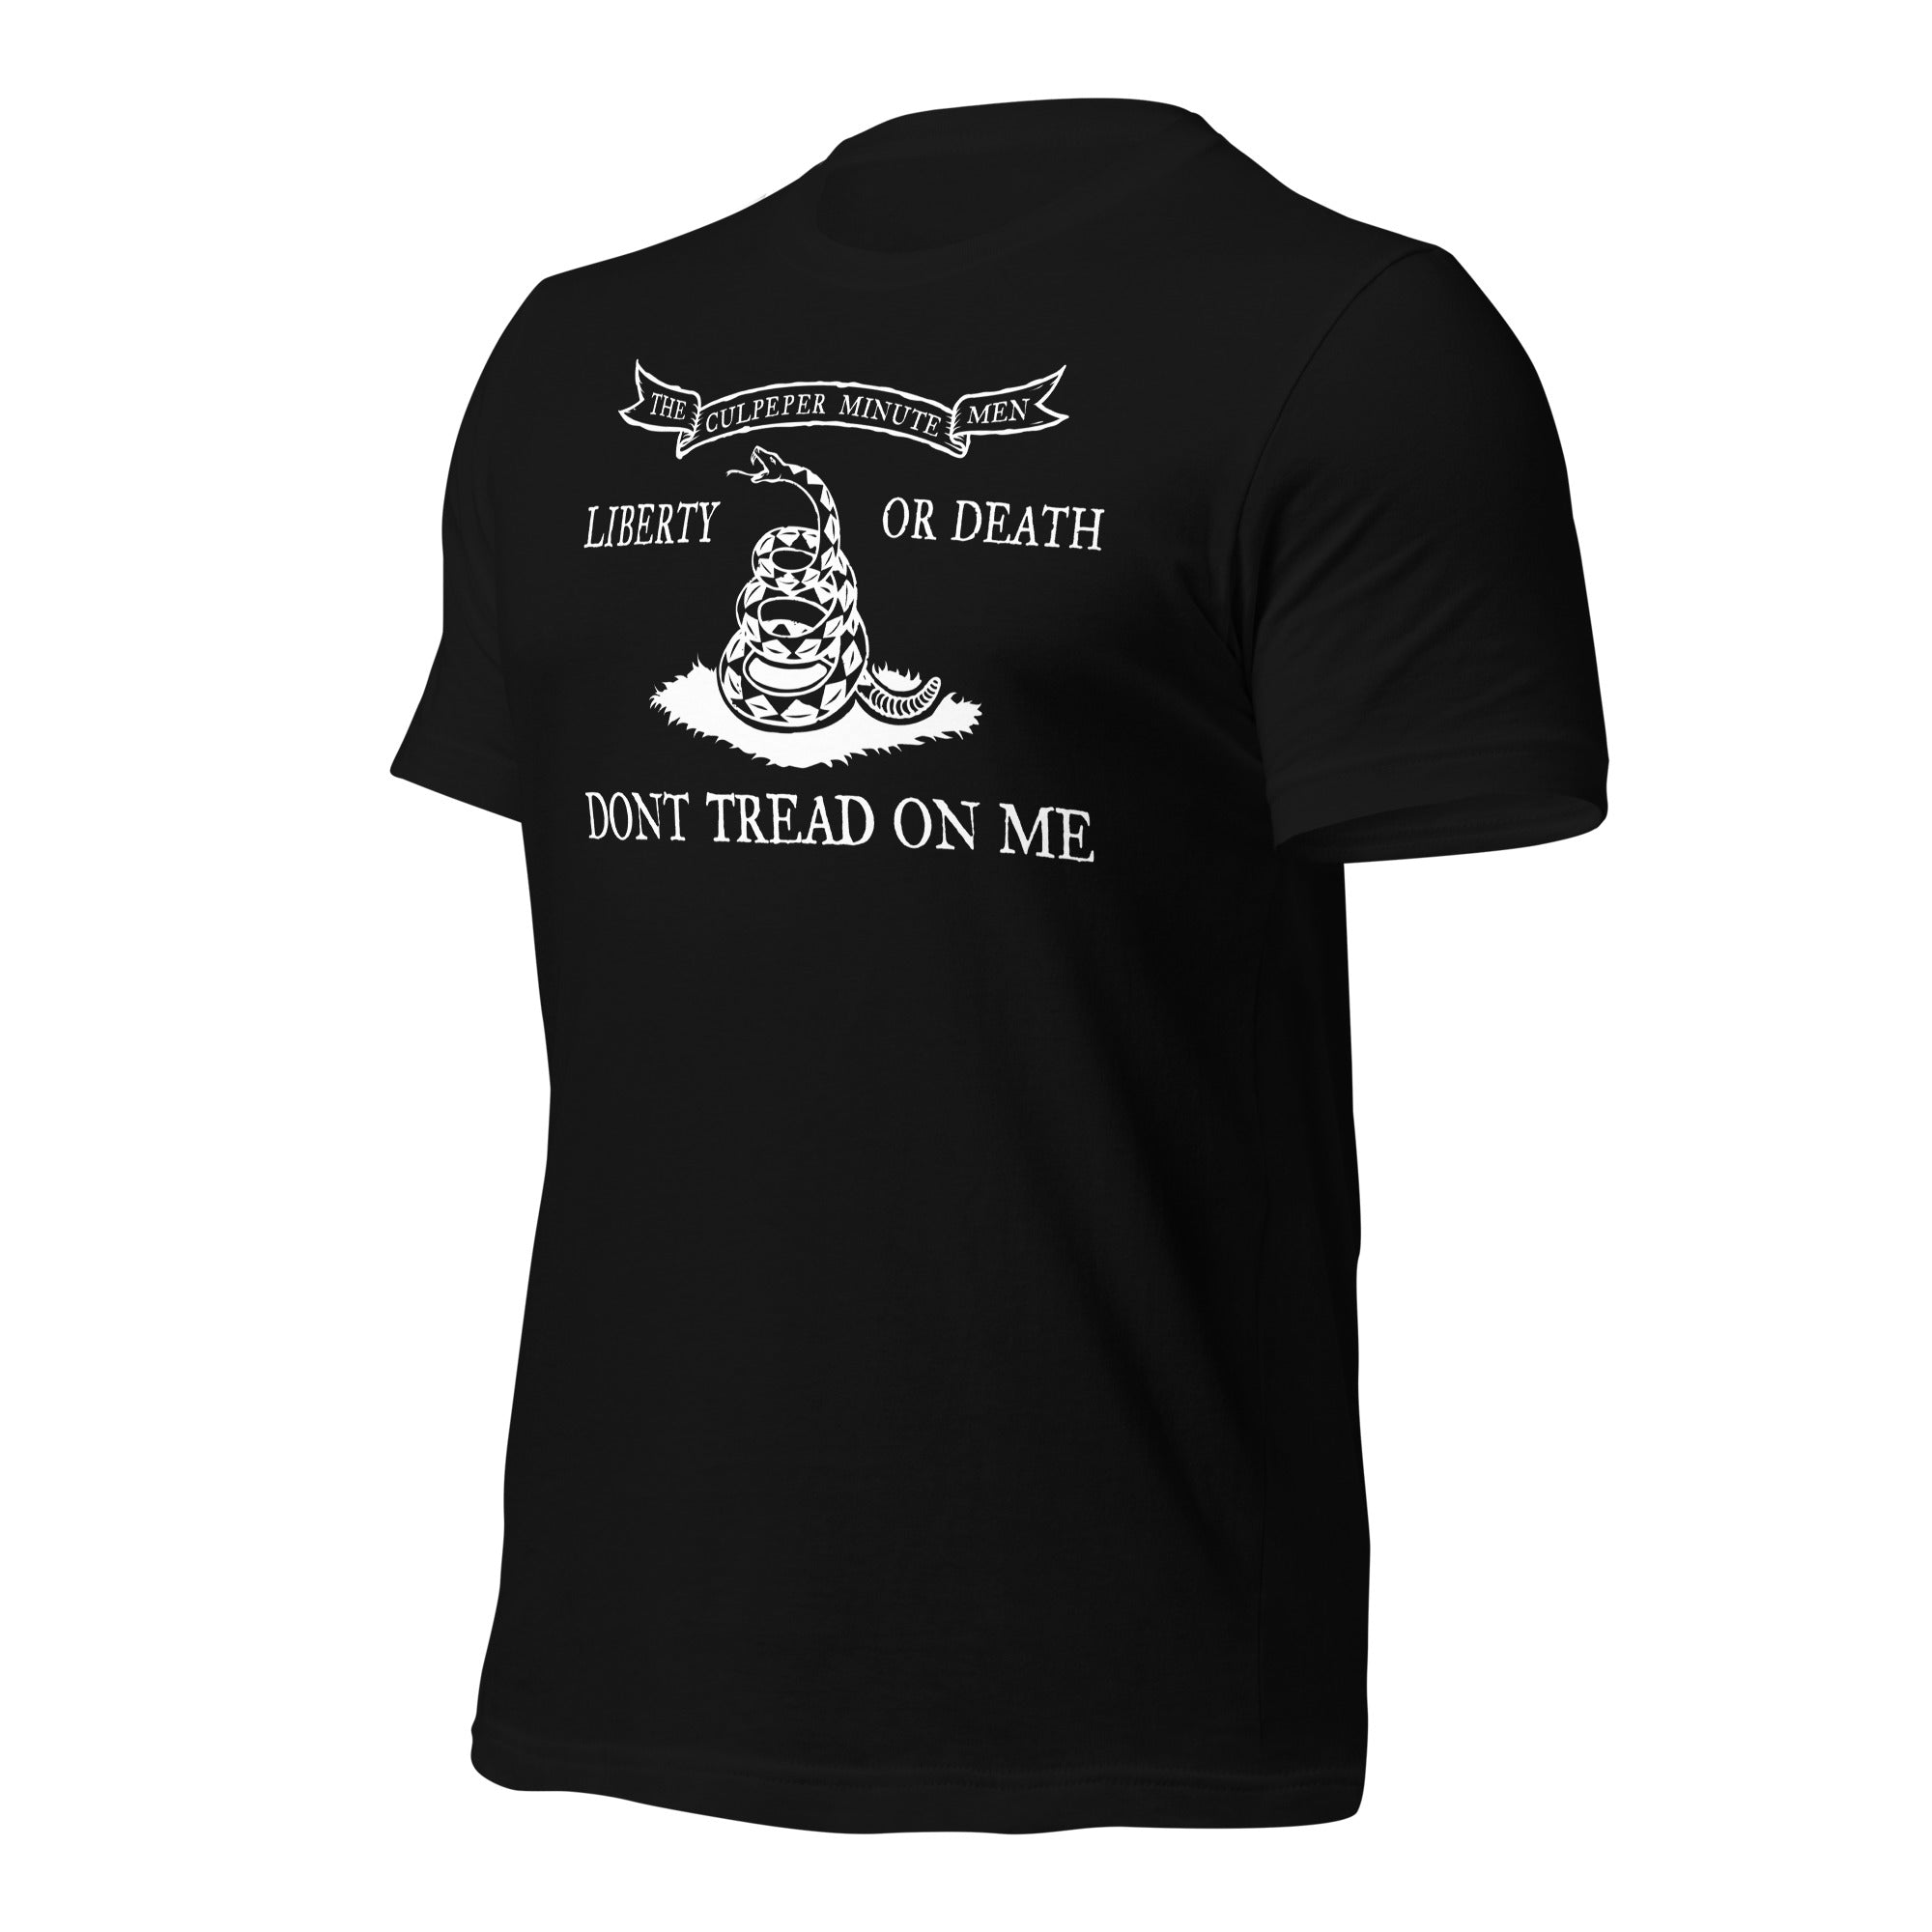 Culpeper Minutemen Don't Tread On Me USA T-Shirt